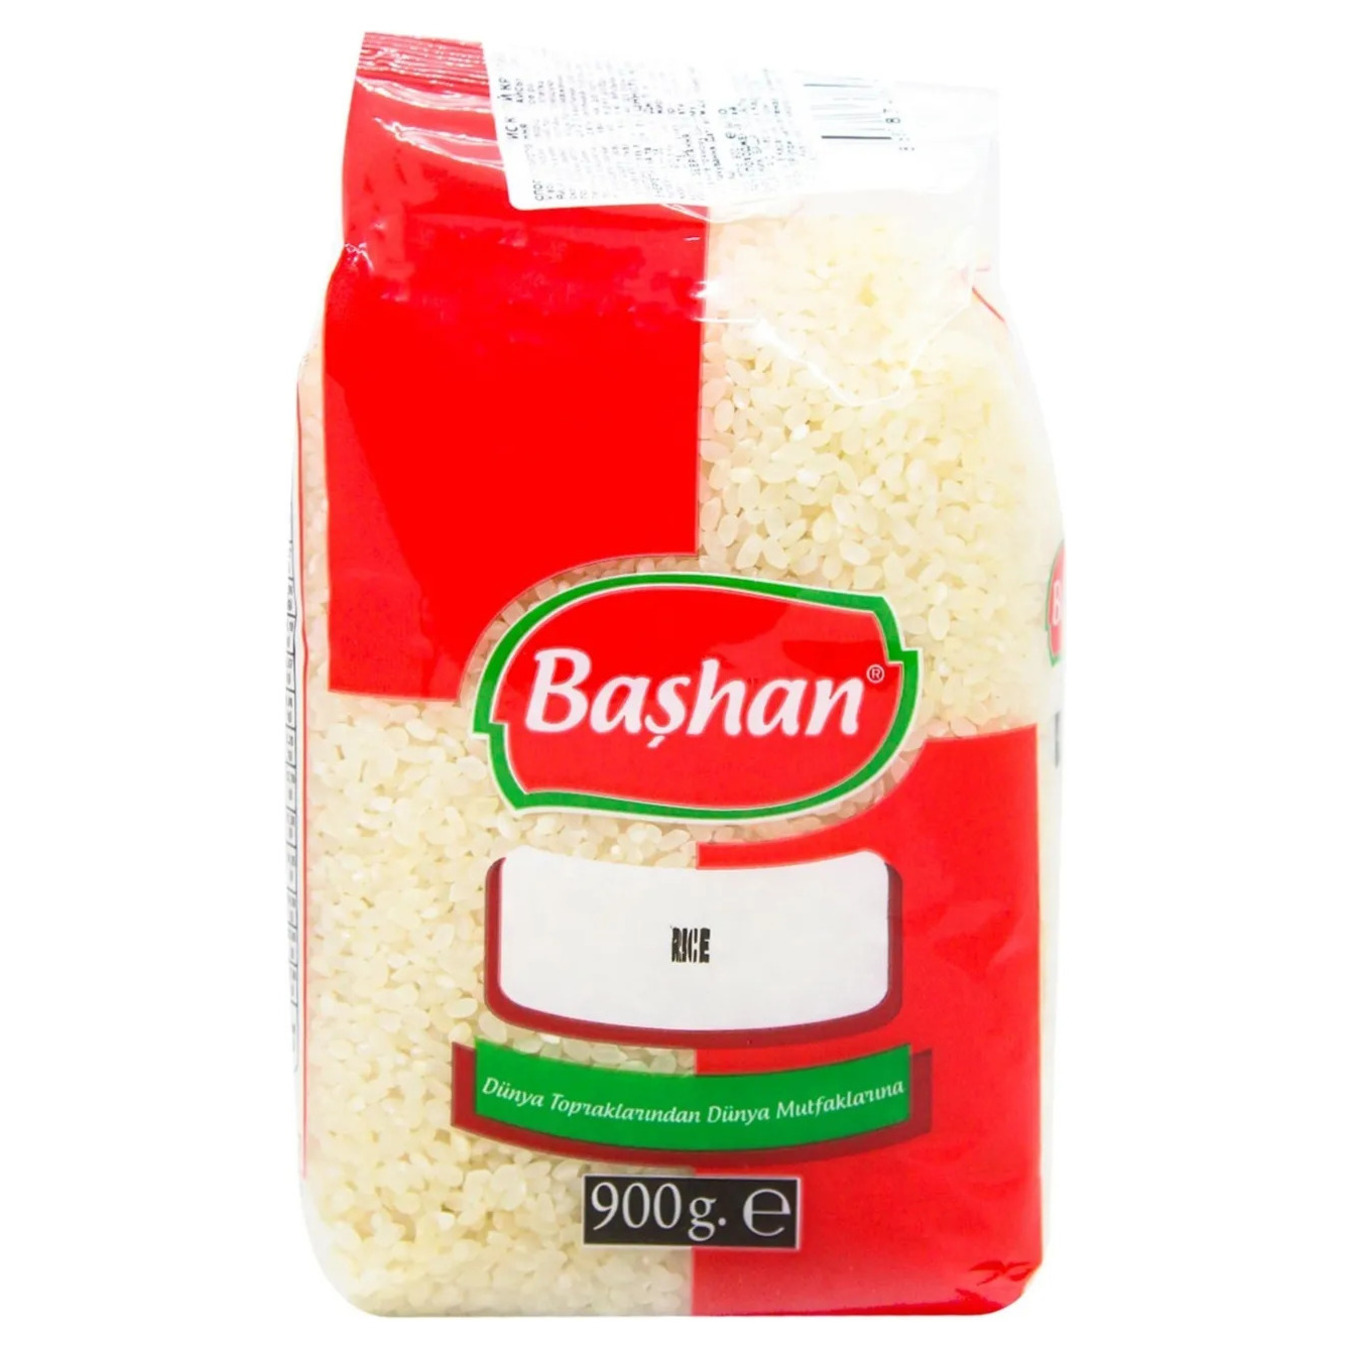 Bashan Rice 900g